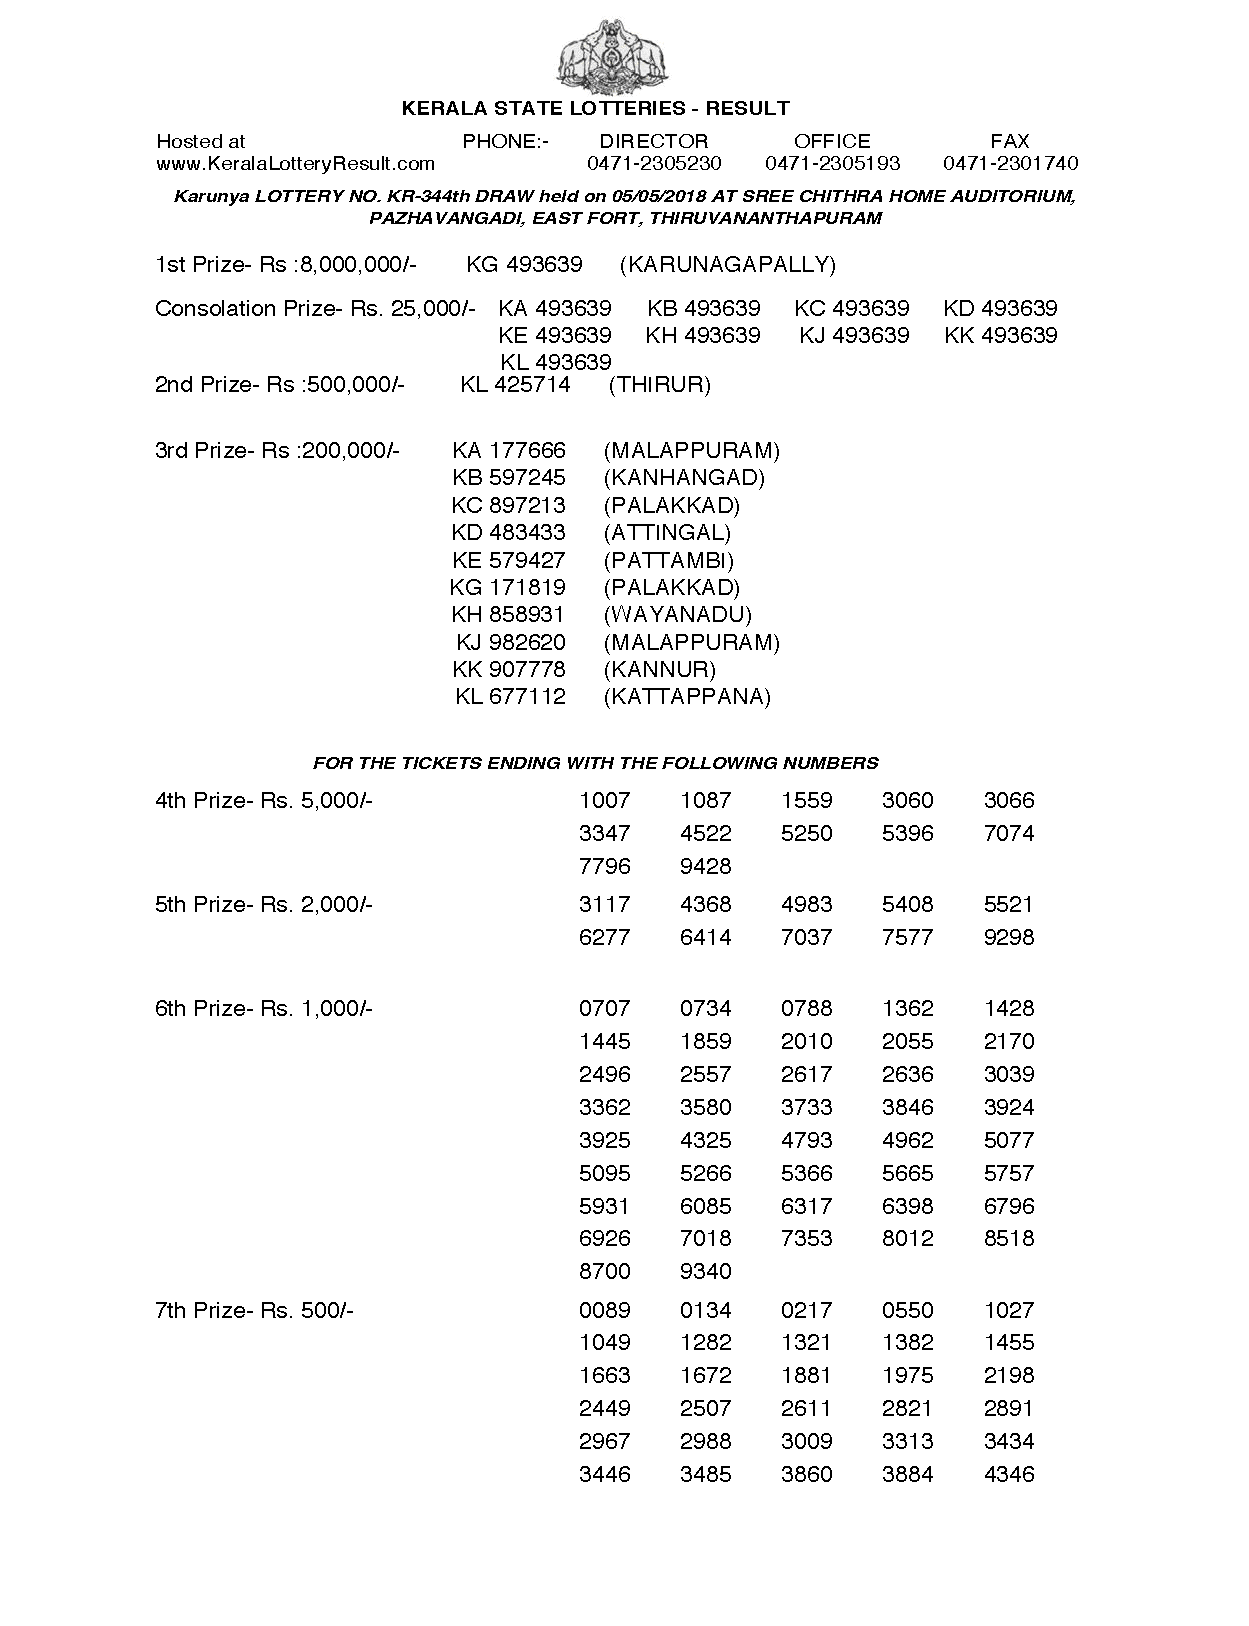 Karunya KR344 Kerala Lottery Results Screenshot: Page 1